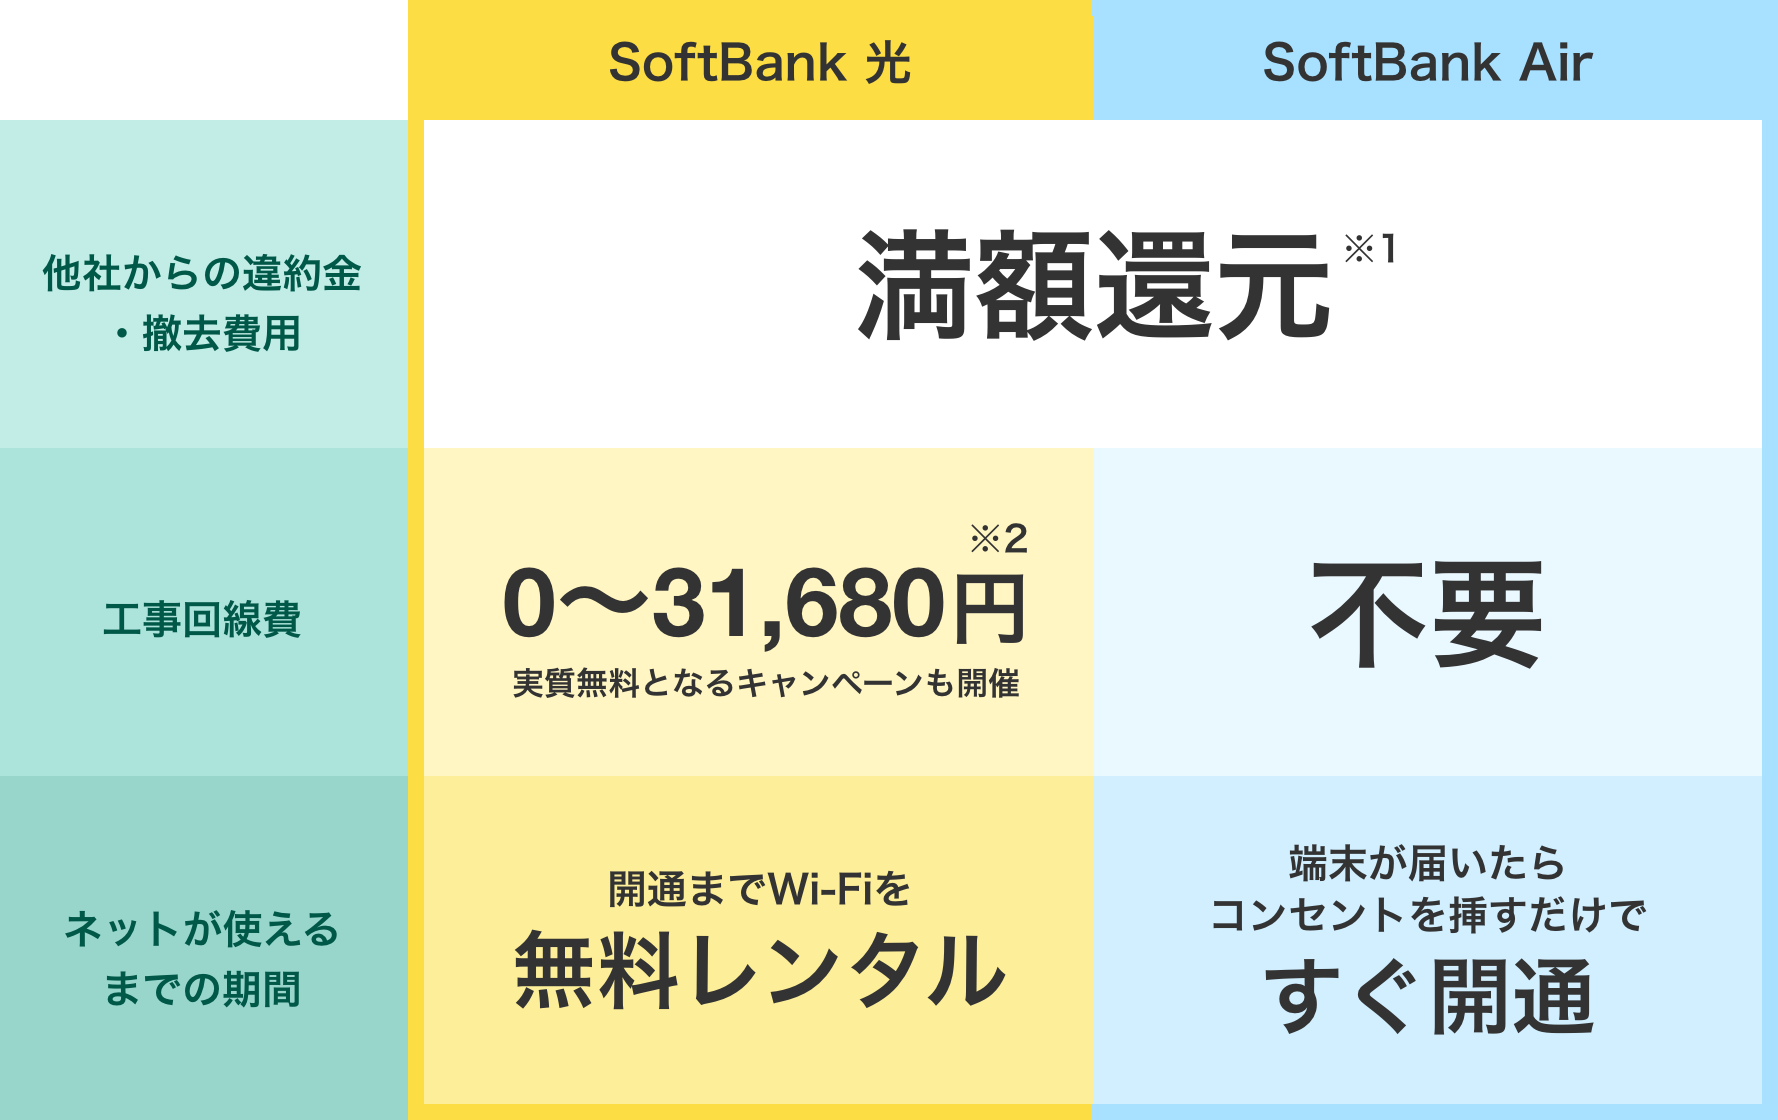 他社からの違約金・撤去費用 SoftBank 光、SoftBank Airいずれも満額還元（※1） 工事回線費 SoftBank 光は0〜31,680円（※2）実質無料となるキャンペーンも開催、SoftBank Airは不要 ネットが使えるまでの期間 SoftBank 光は開通までWi-Fiを無料レンタル、SoftBank Airは端末が届いたらコンセントを挿すだけですぐ開通